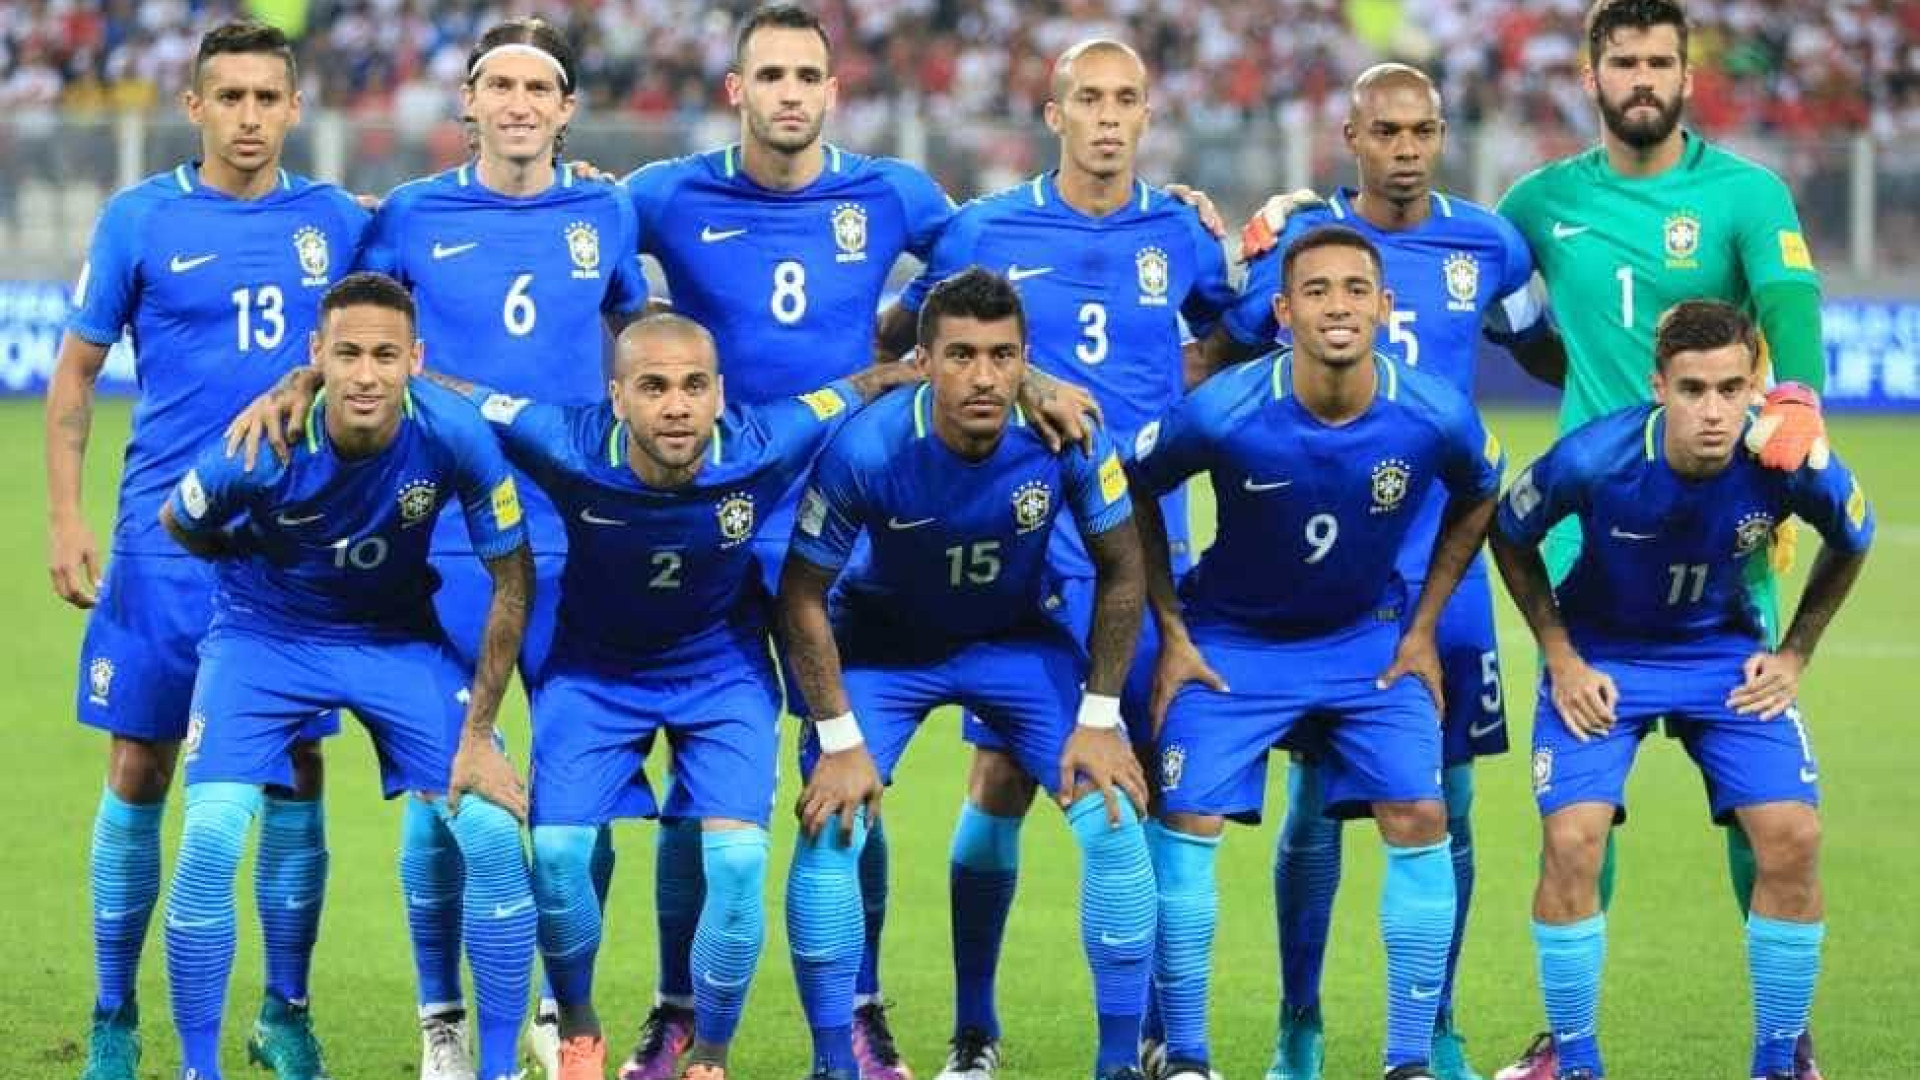 Seleção vai enfrentar a Colômbia com uniforme todo azul, confirma CBF